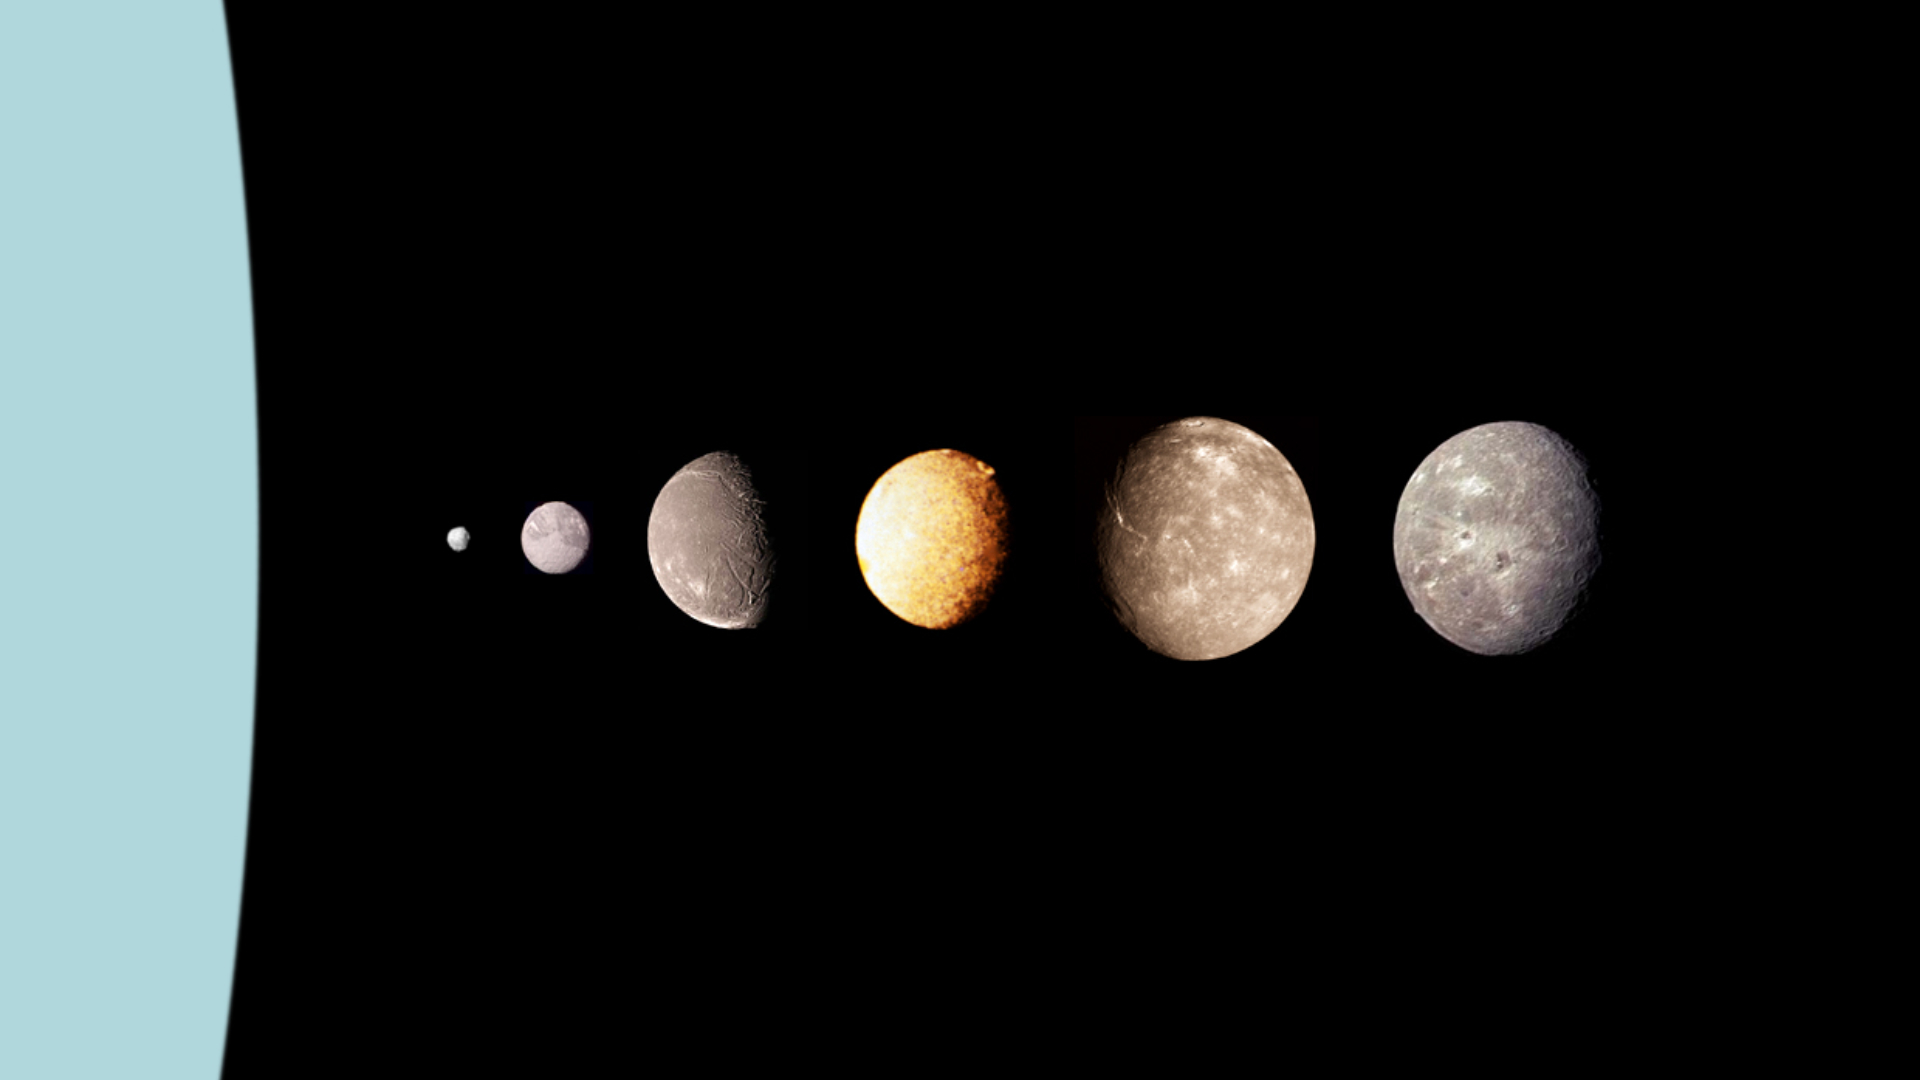 Les 5 principales lunes d'Uranus ressemblent étonnamment à Pluton - Numerama